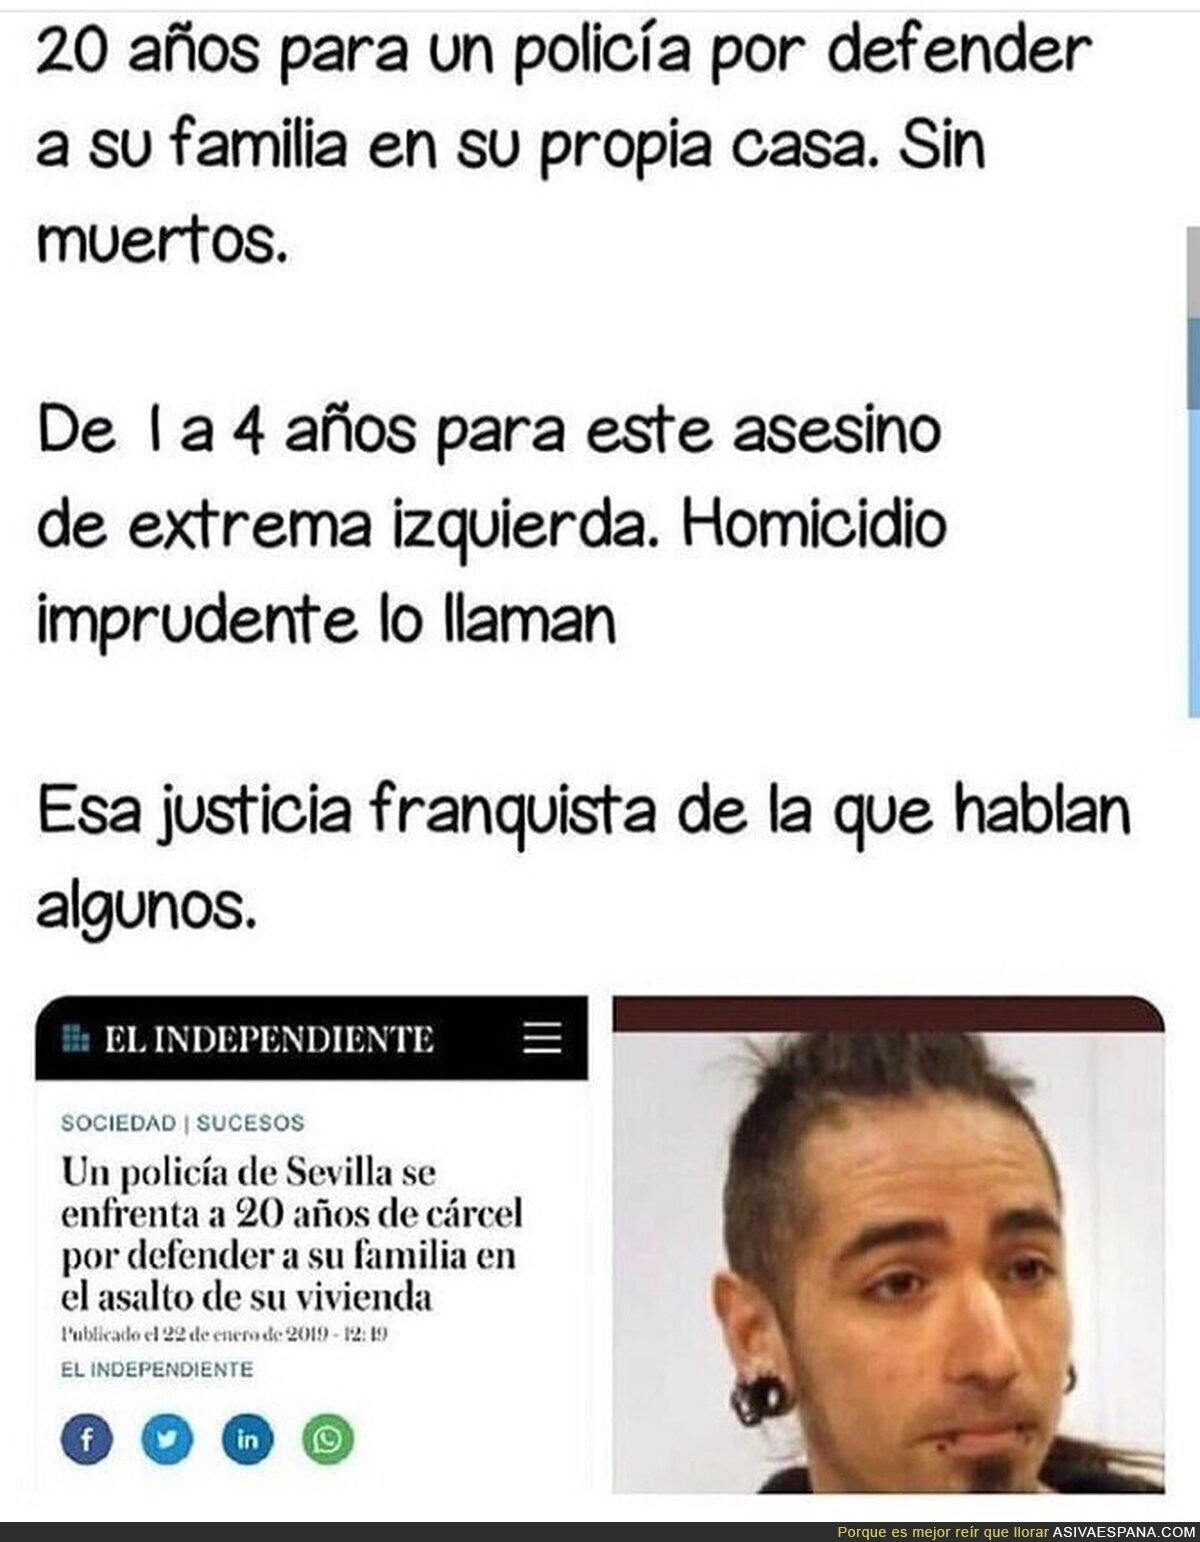 La justicia "franquista" "heteropatriarcal" española